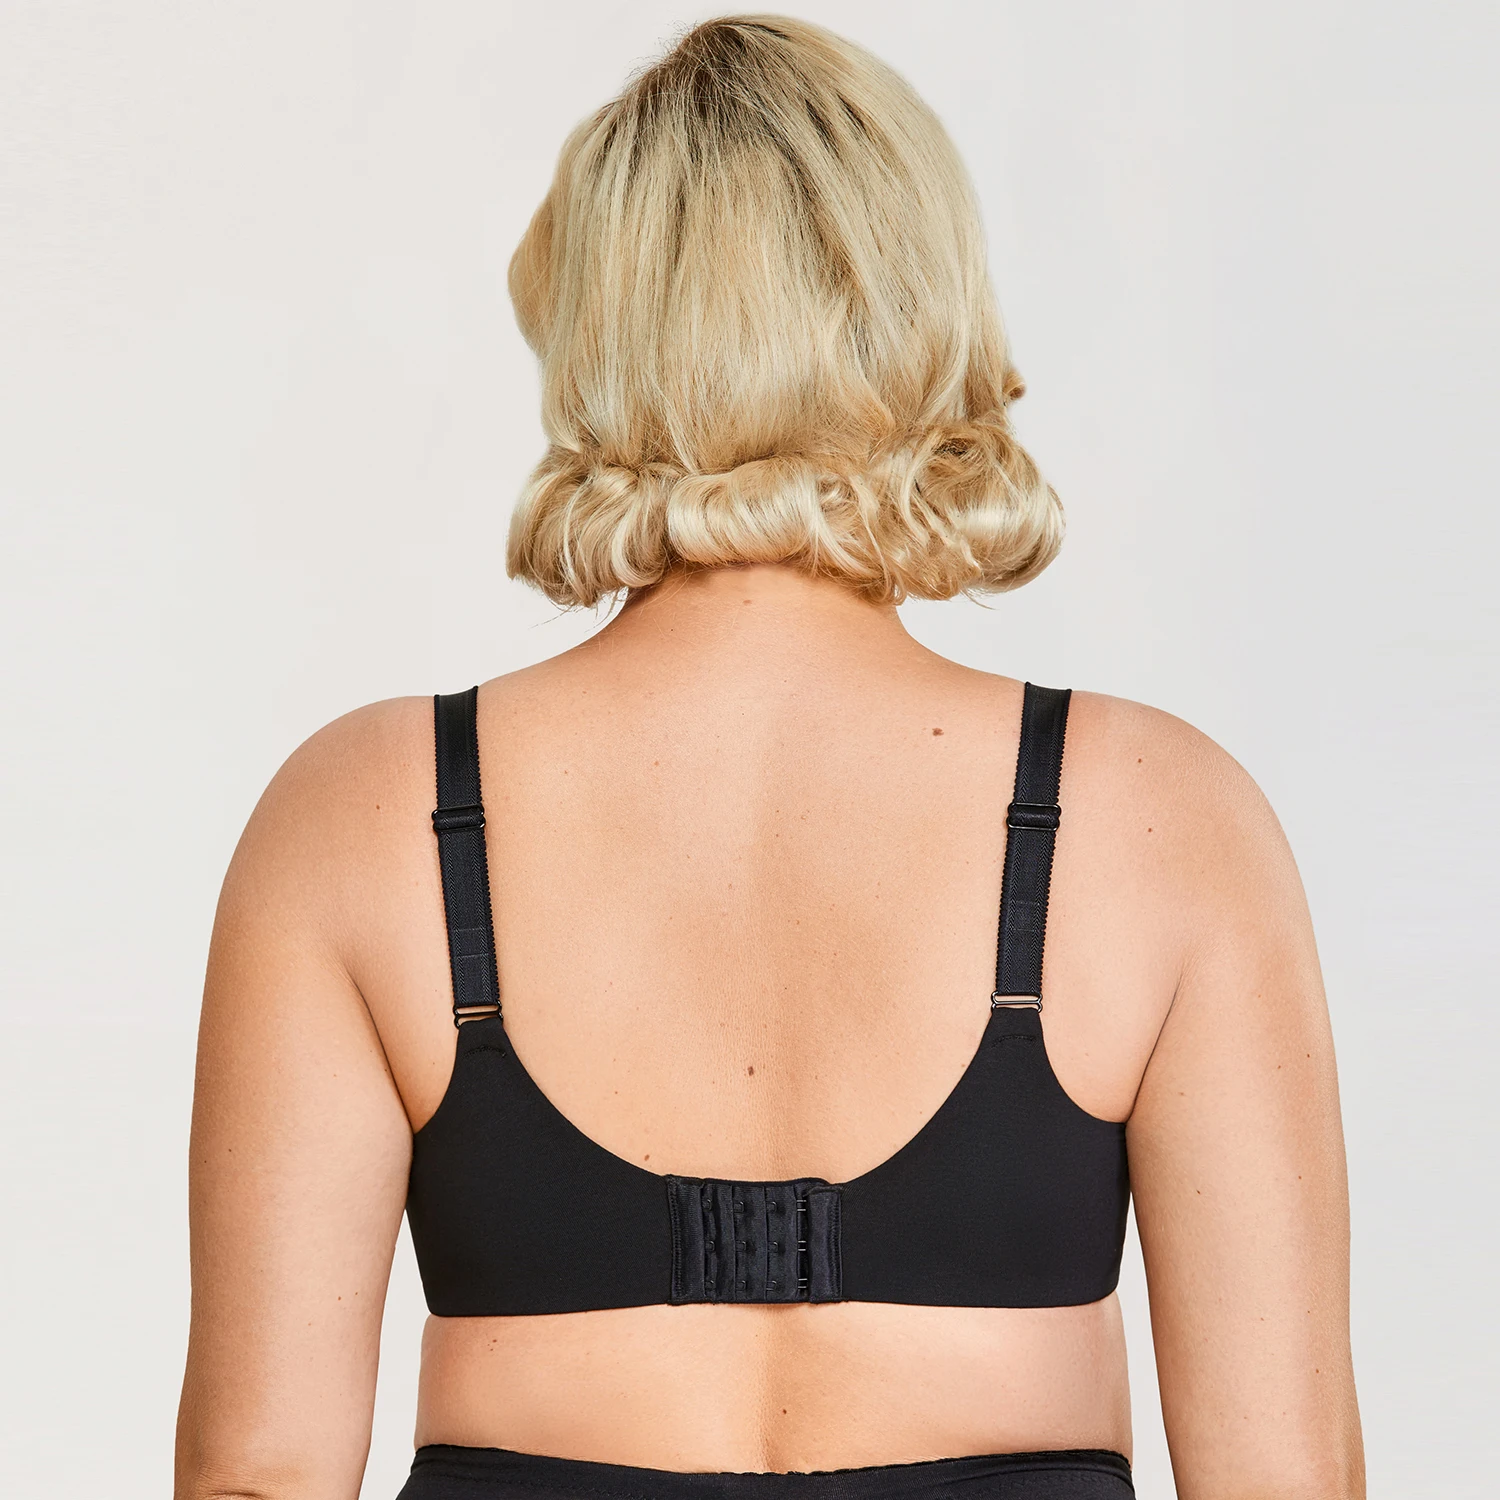 DELIMIRA Women's Minimizer Full Coverage Underwire Non Padded Cotton Bra  Plus Size Black Beige